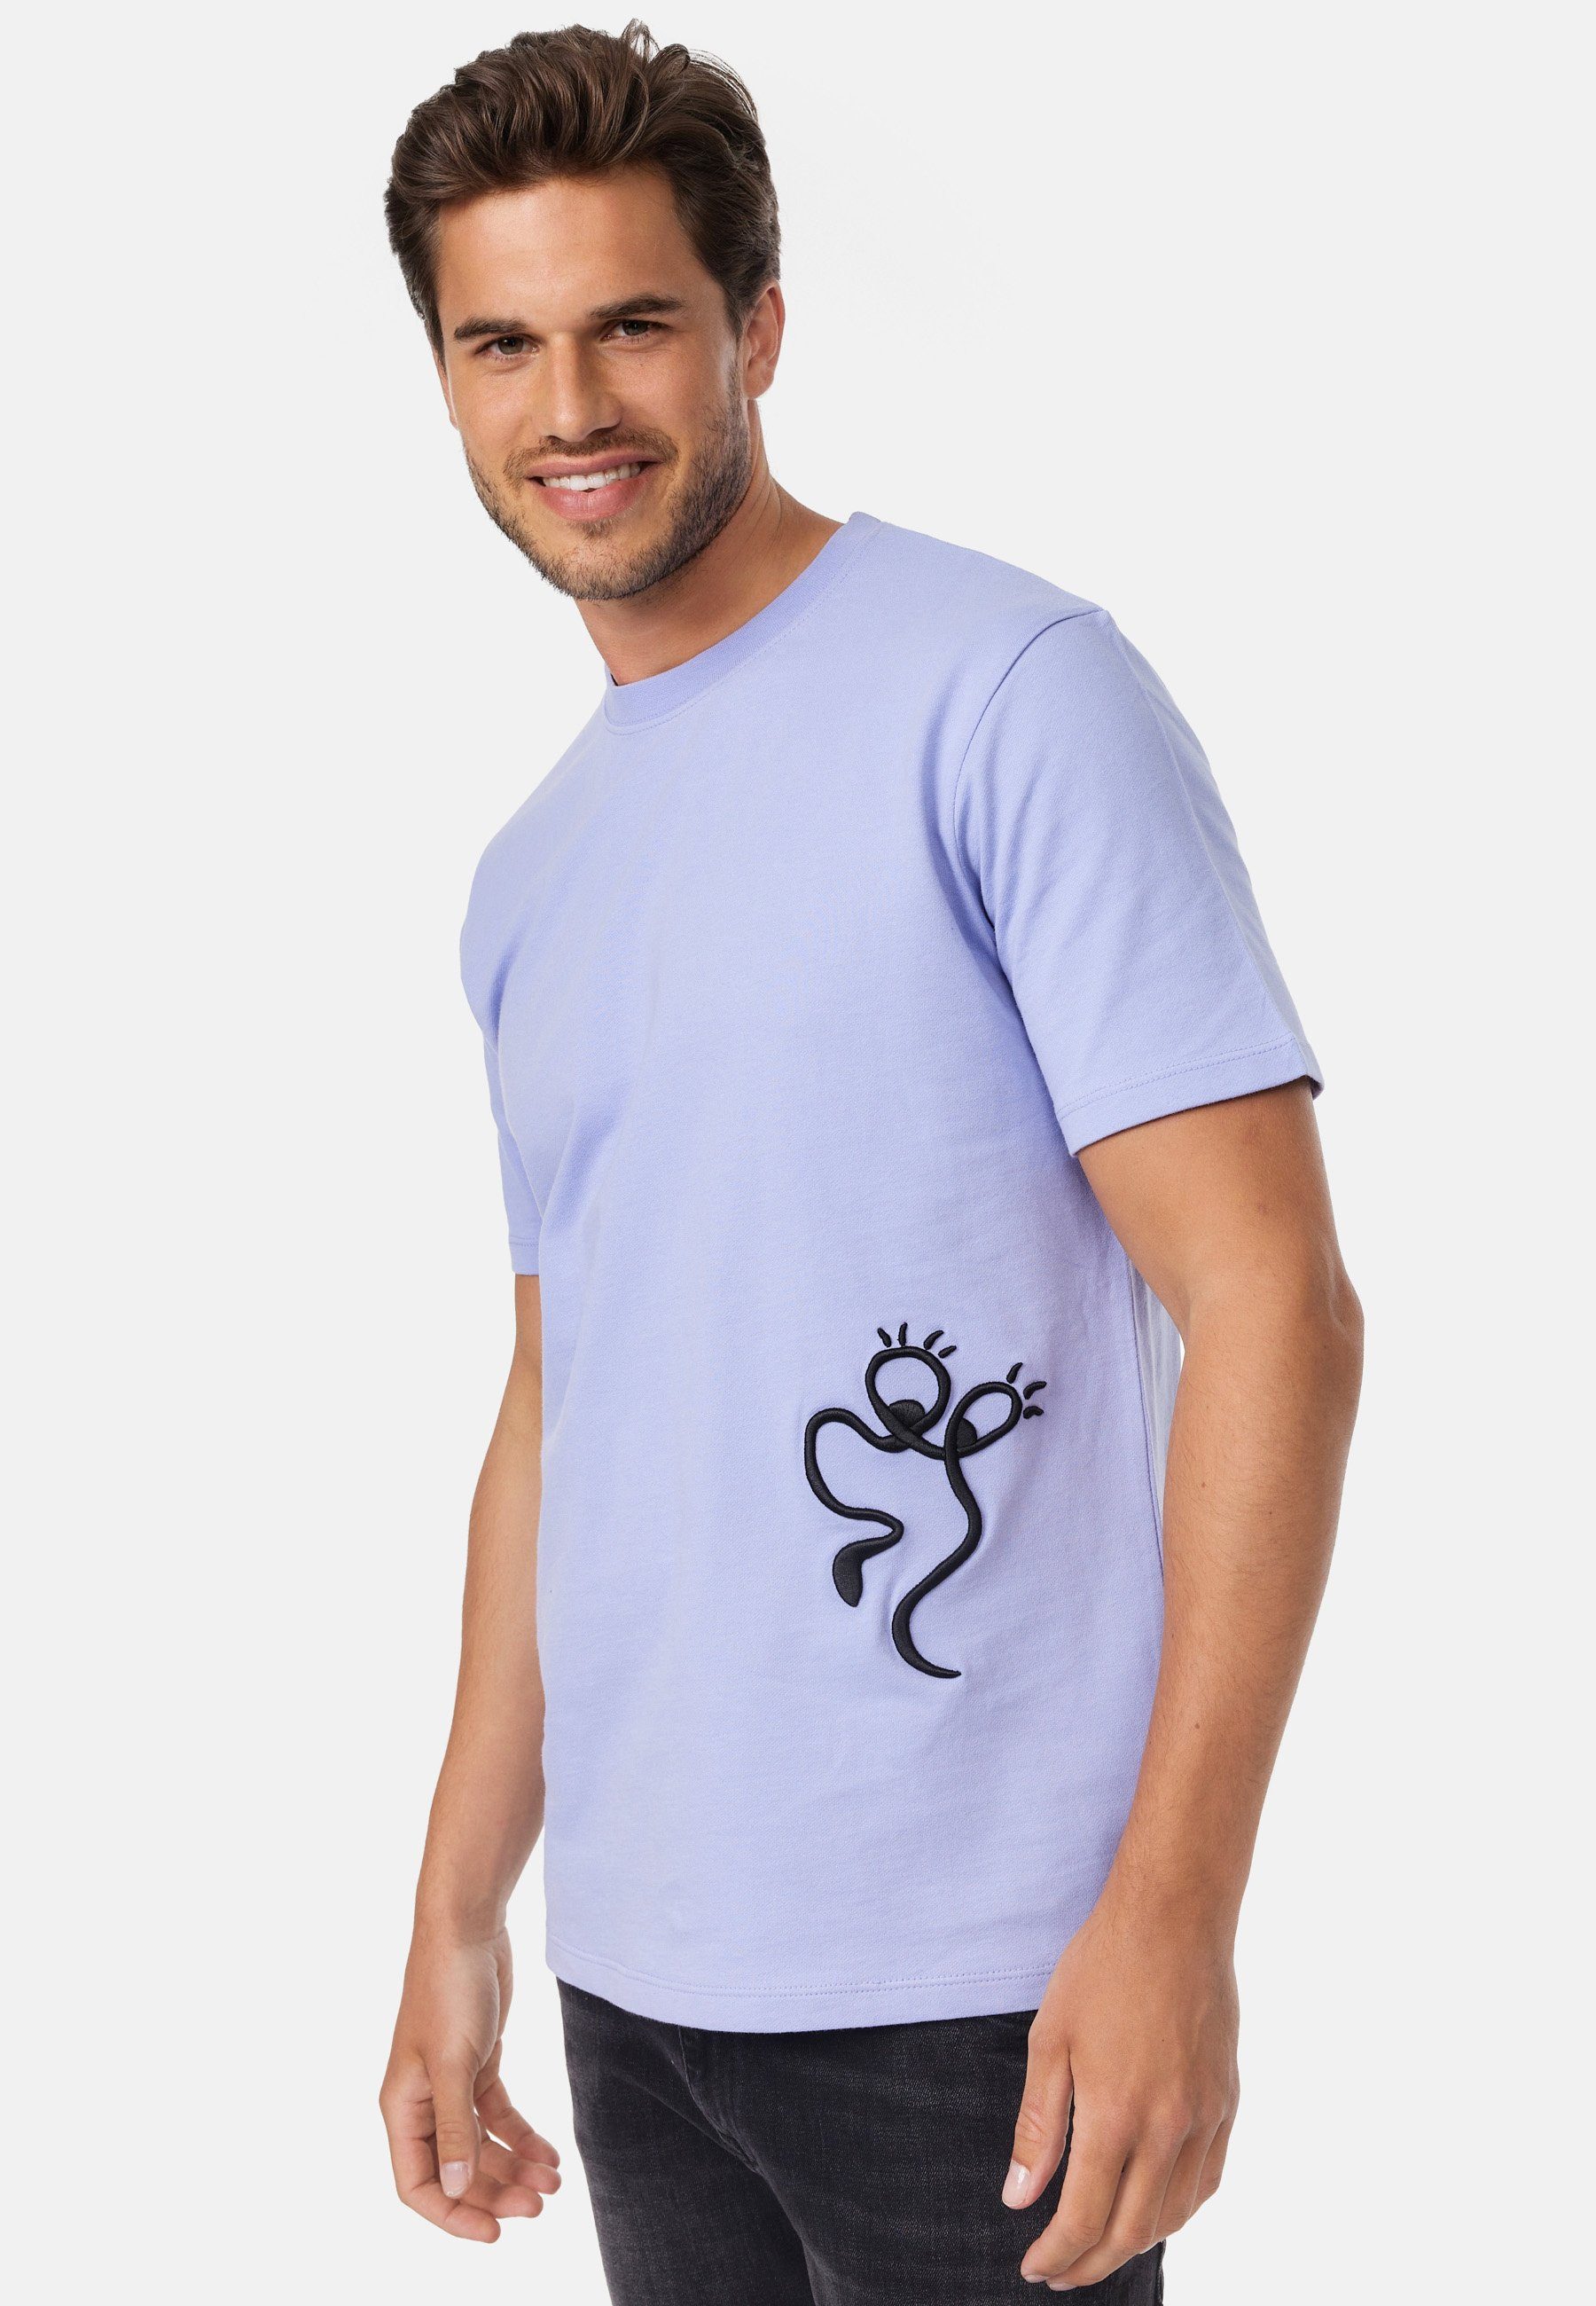 smiler. flieder T-Shirt Design mit laugh. modernem